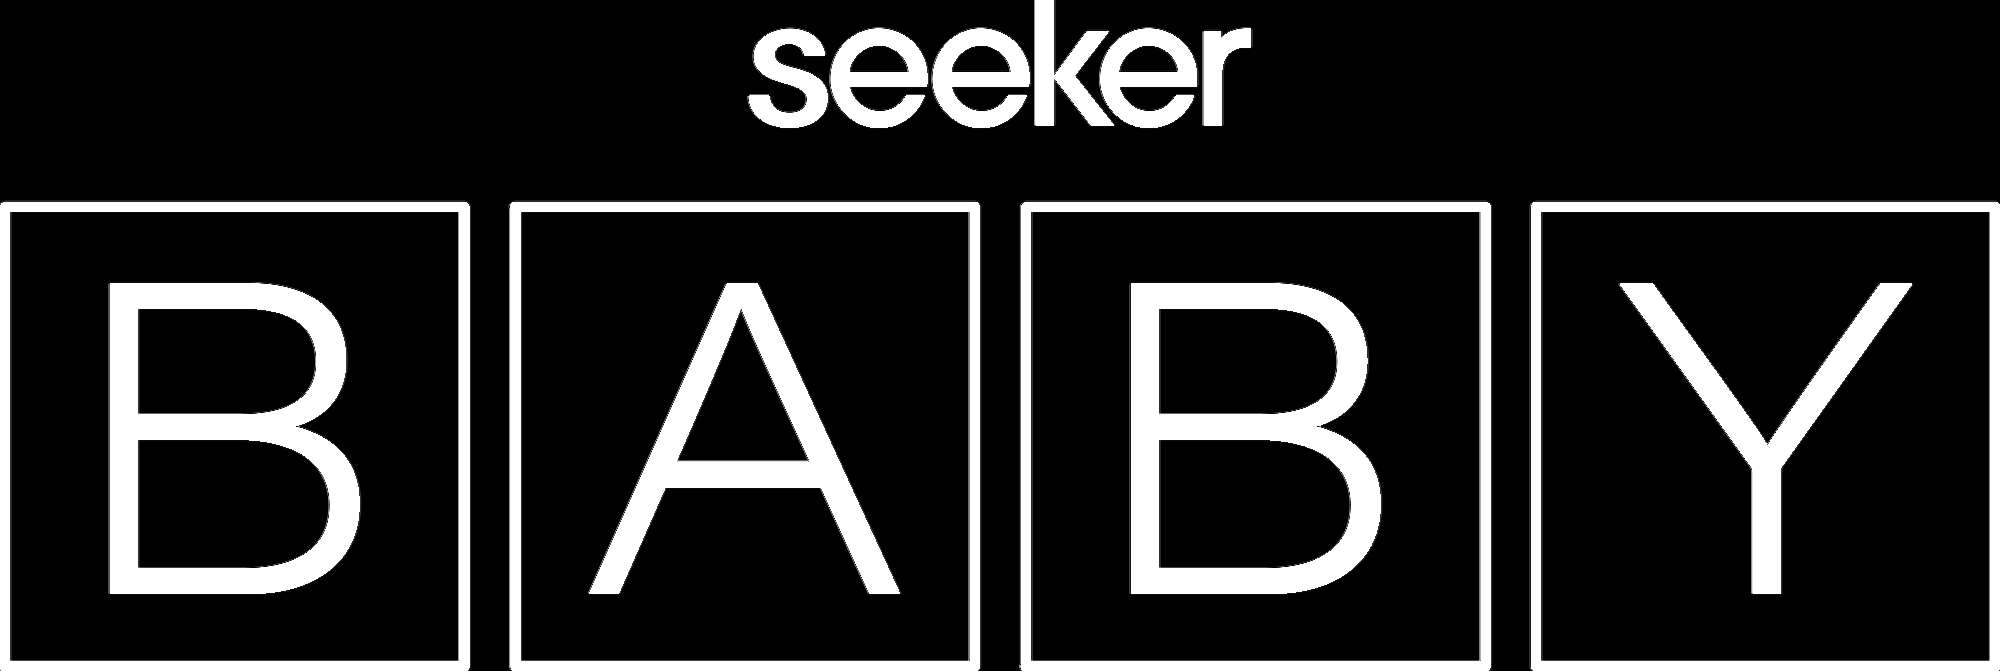 Seeker Baby logo